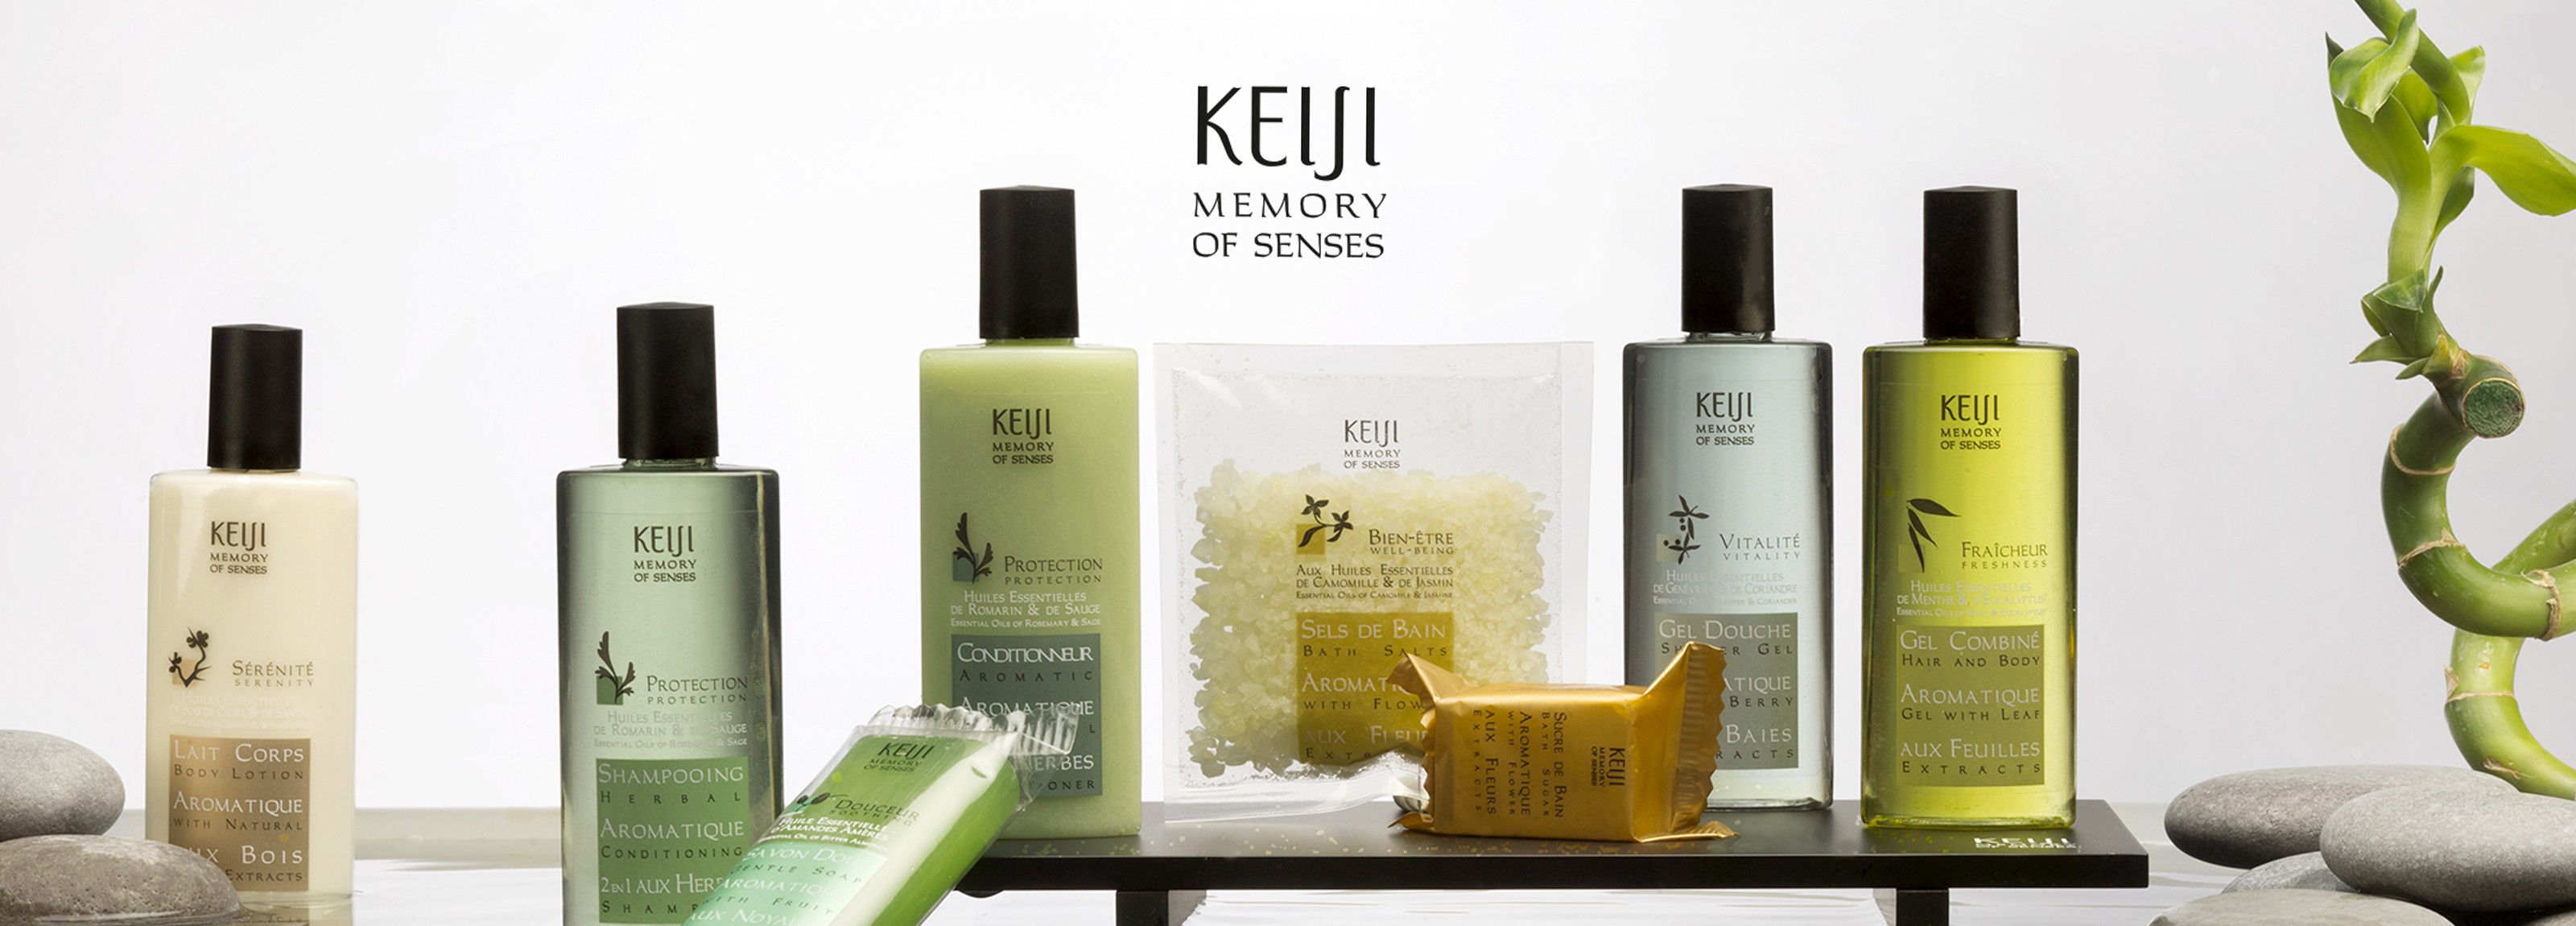 keiji bathroom products and bath salts